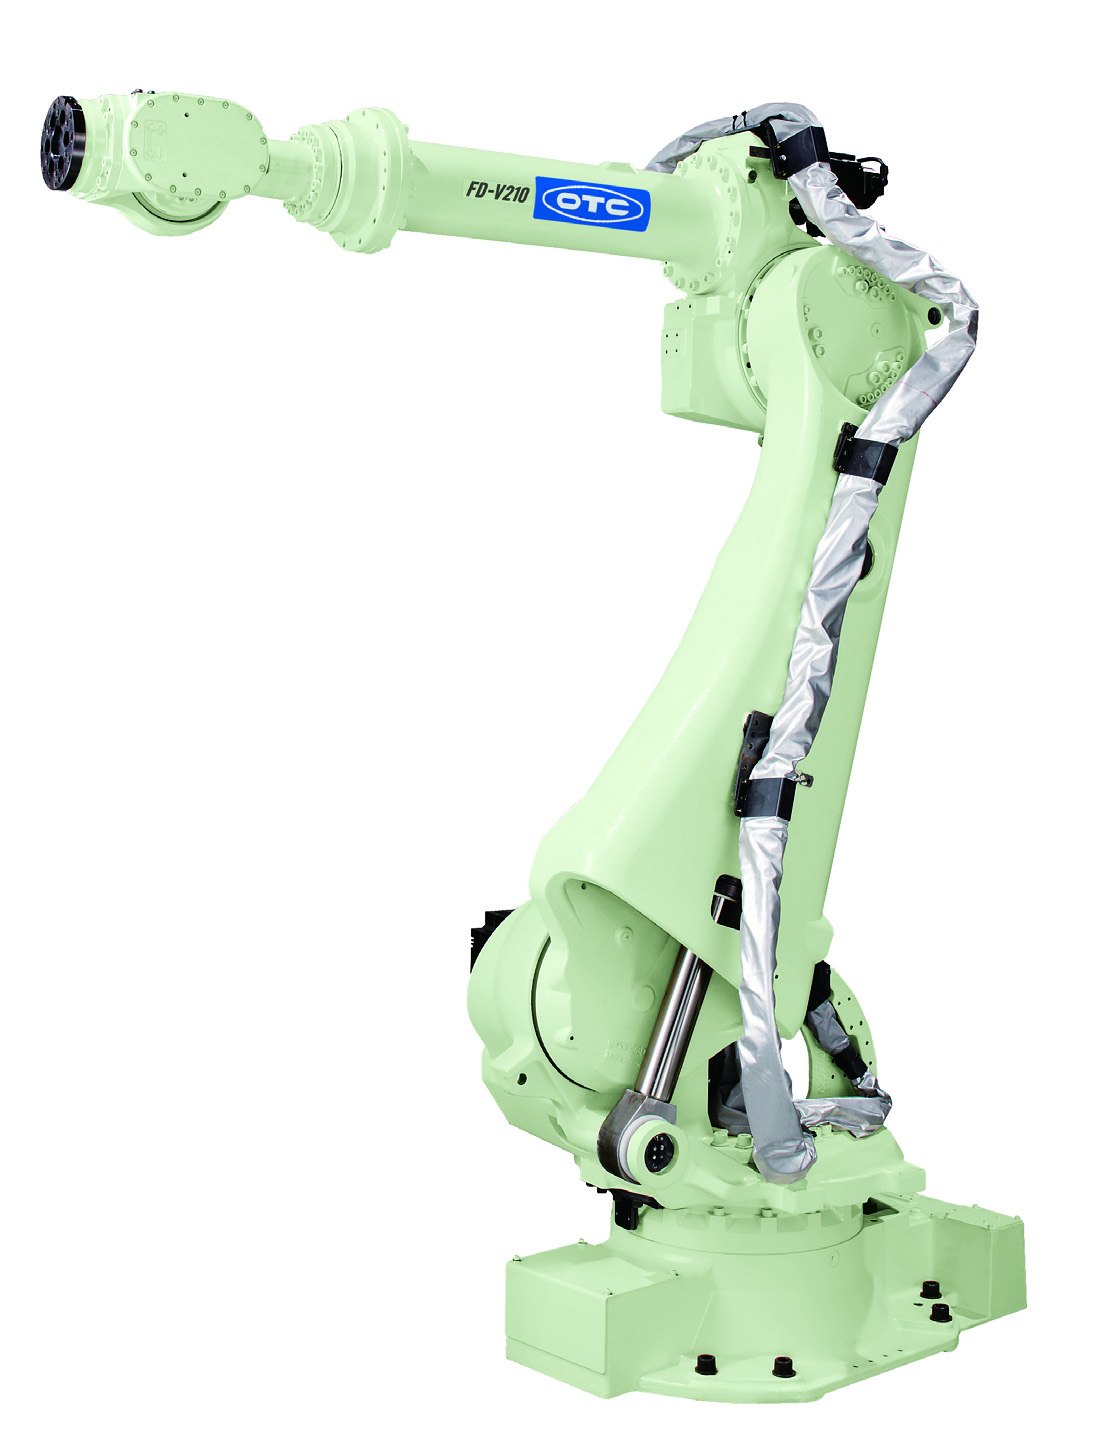 Манипуляторы производственные. Робот-манипулятор new0805a. Роботизированный сварочный комплекс OTC Daihen. Робот-манипулятор SD 1-4-320. Робот-манипулятор, NDP-090.